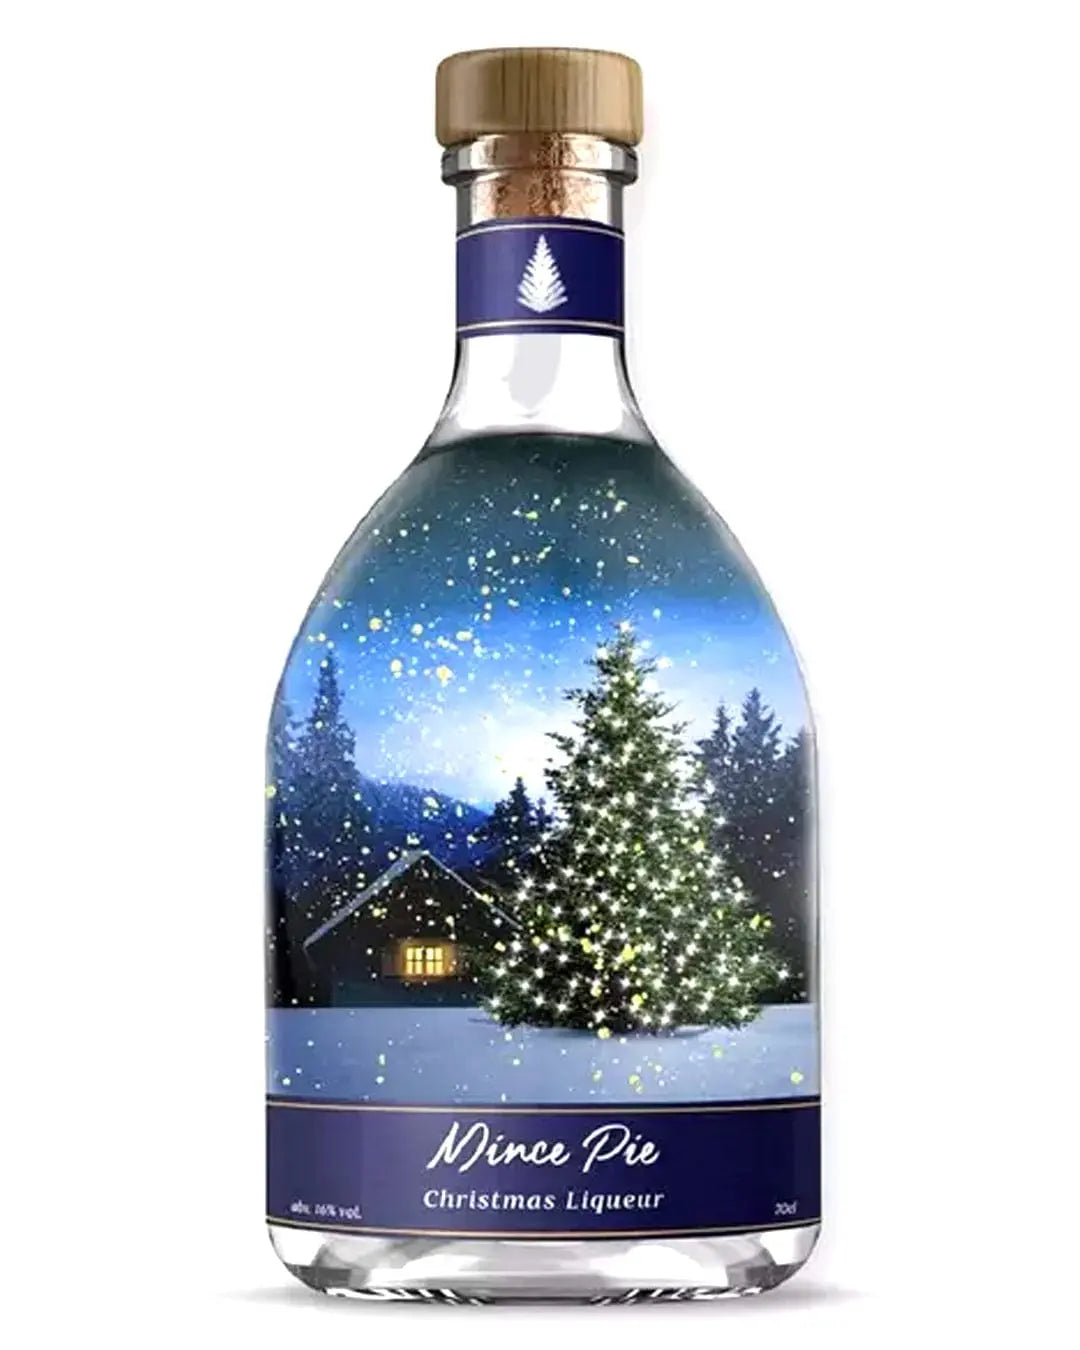 Mince Pie Snowglobe Christmas Liqueur, 70 cl Liqueurs & Other Spirits